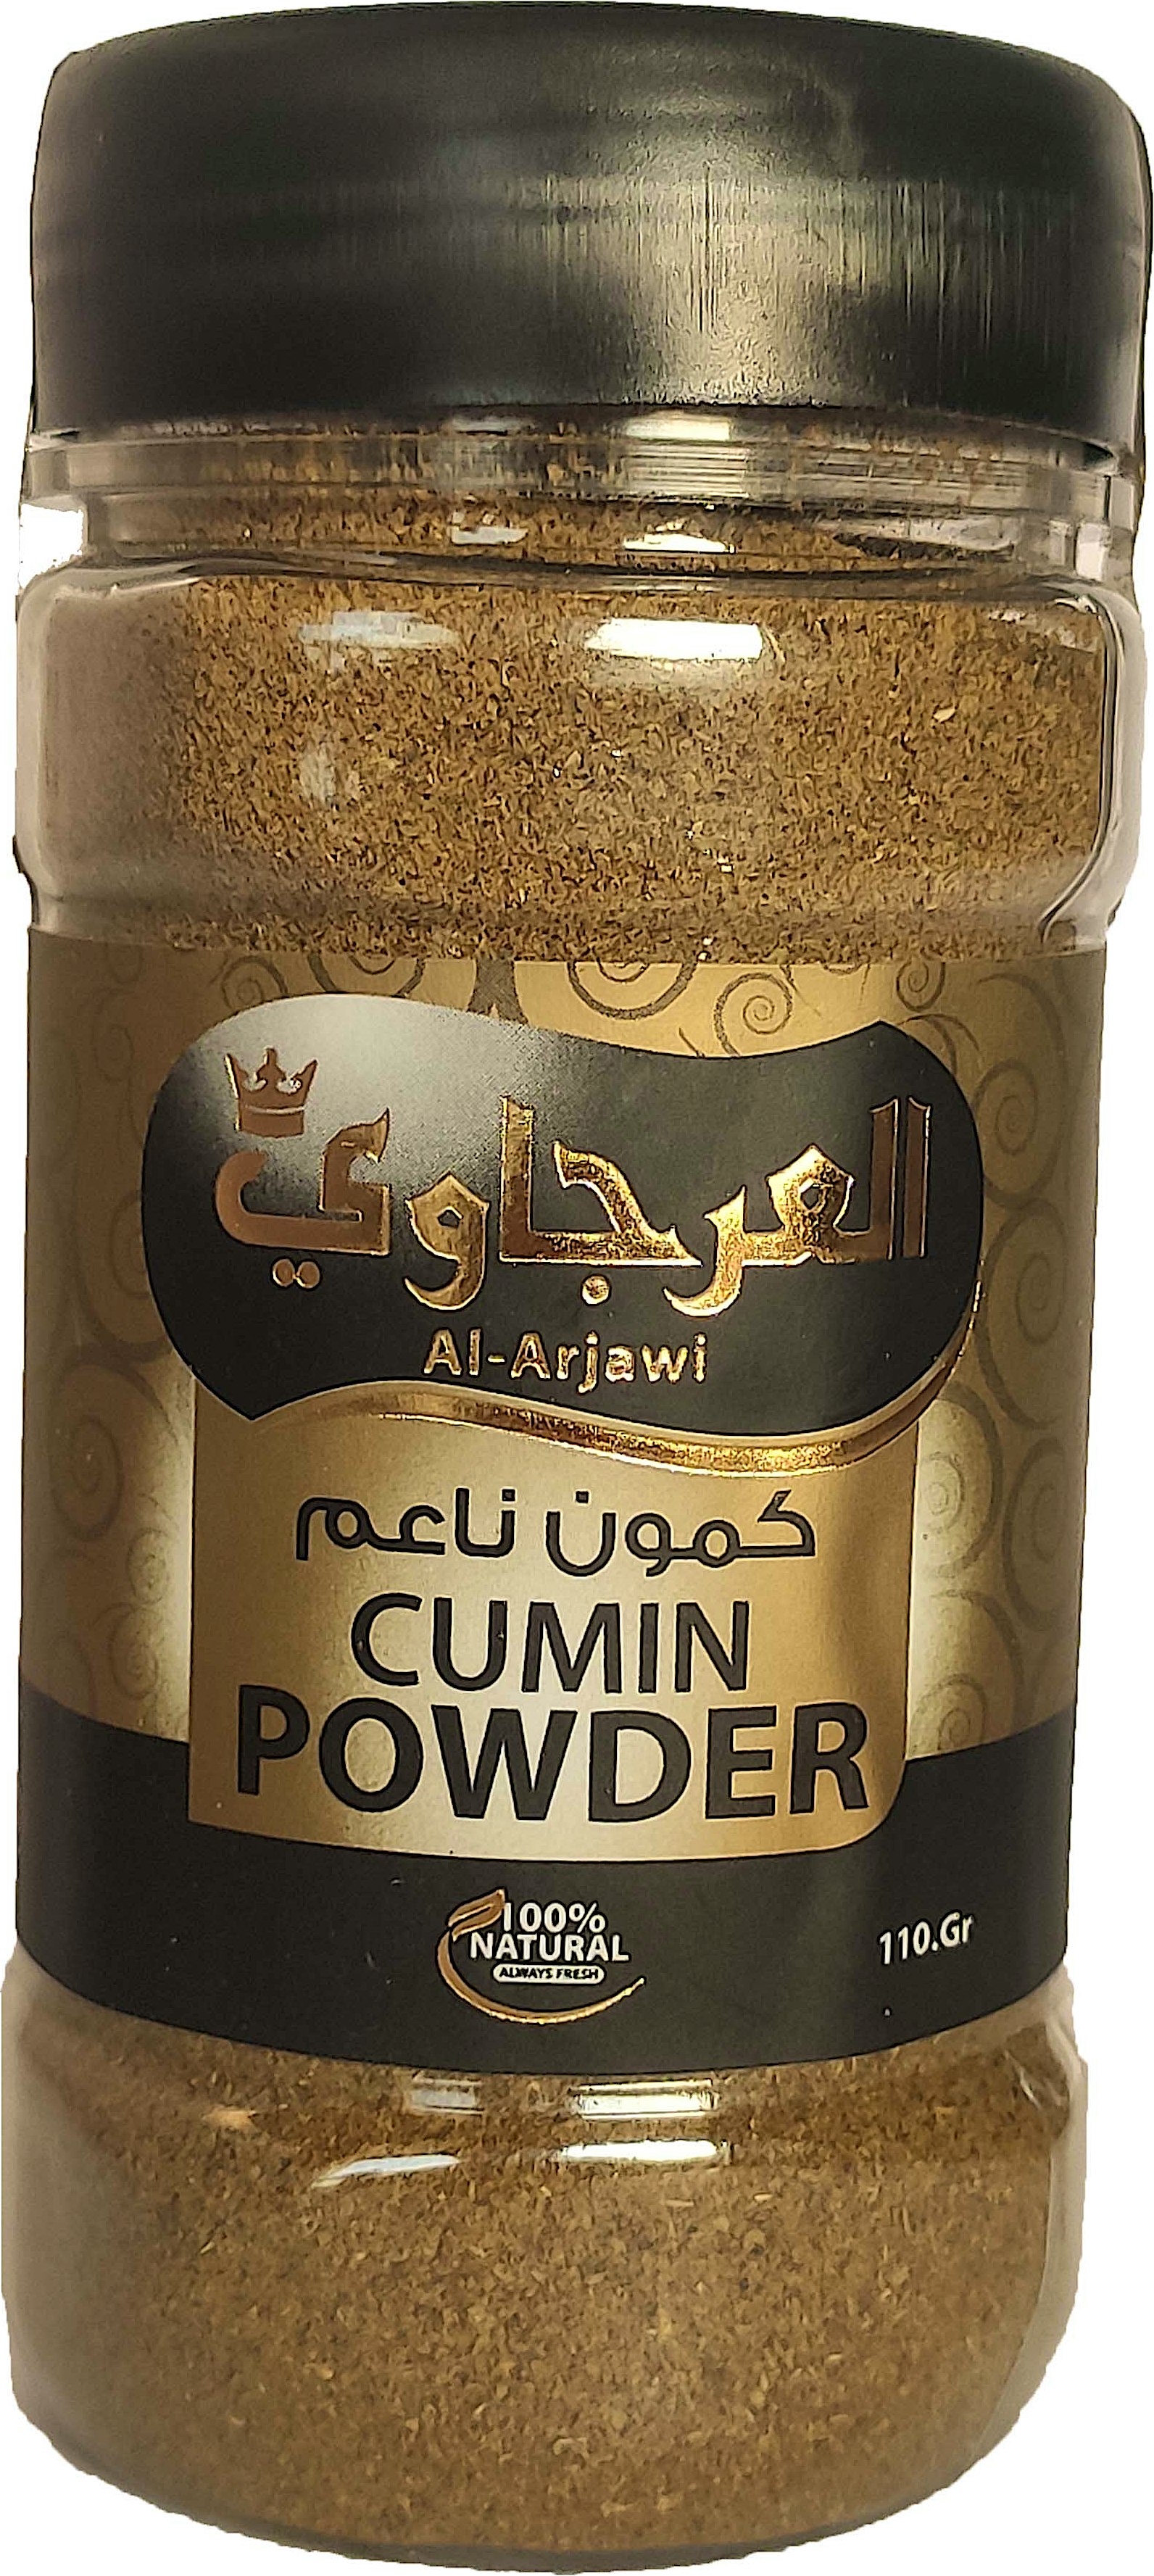 Al Arjawi Cumin Powder 110 g